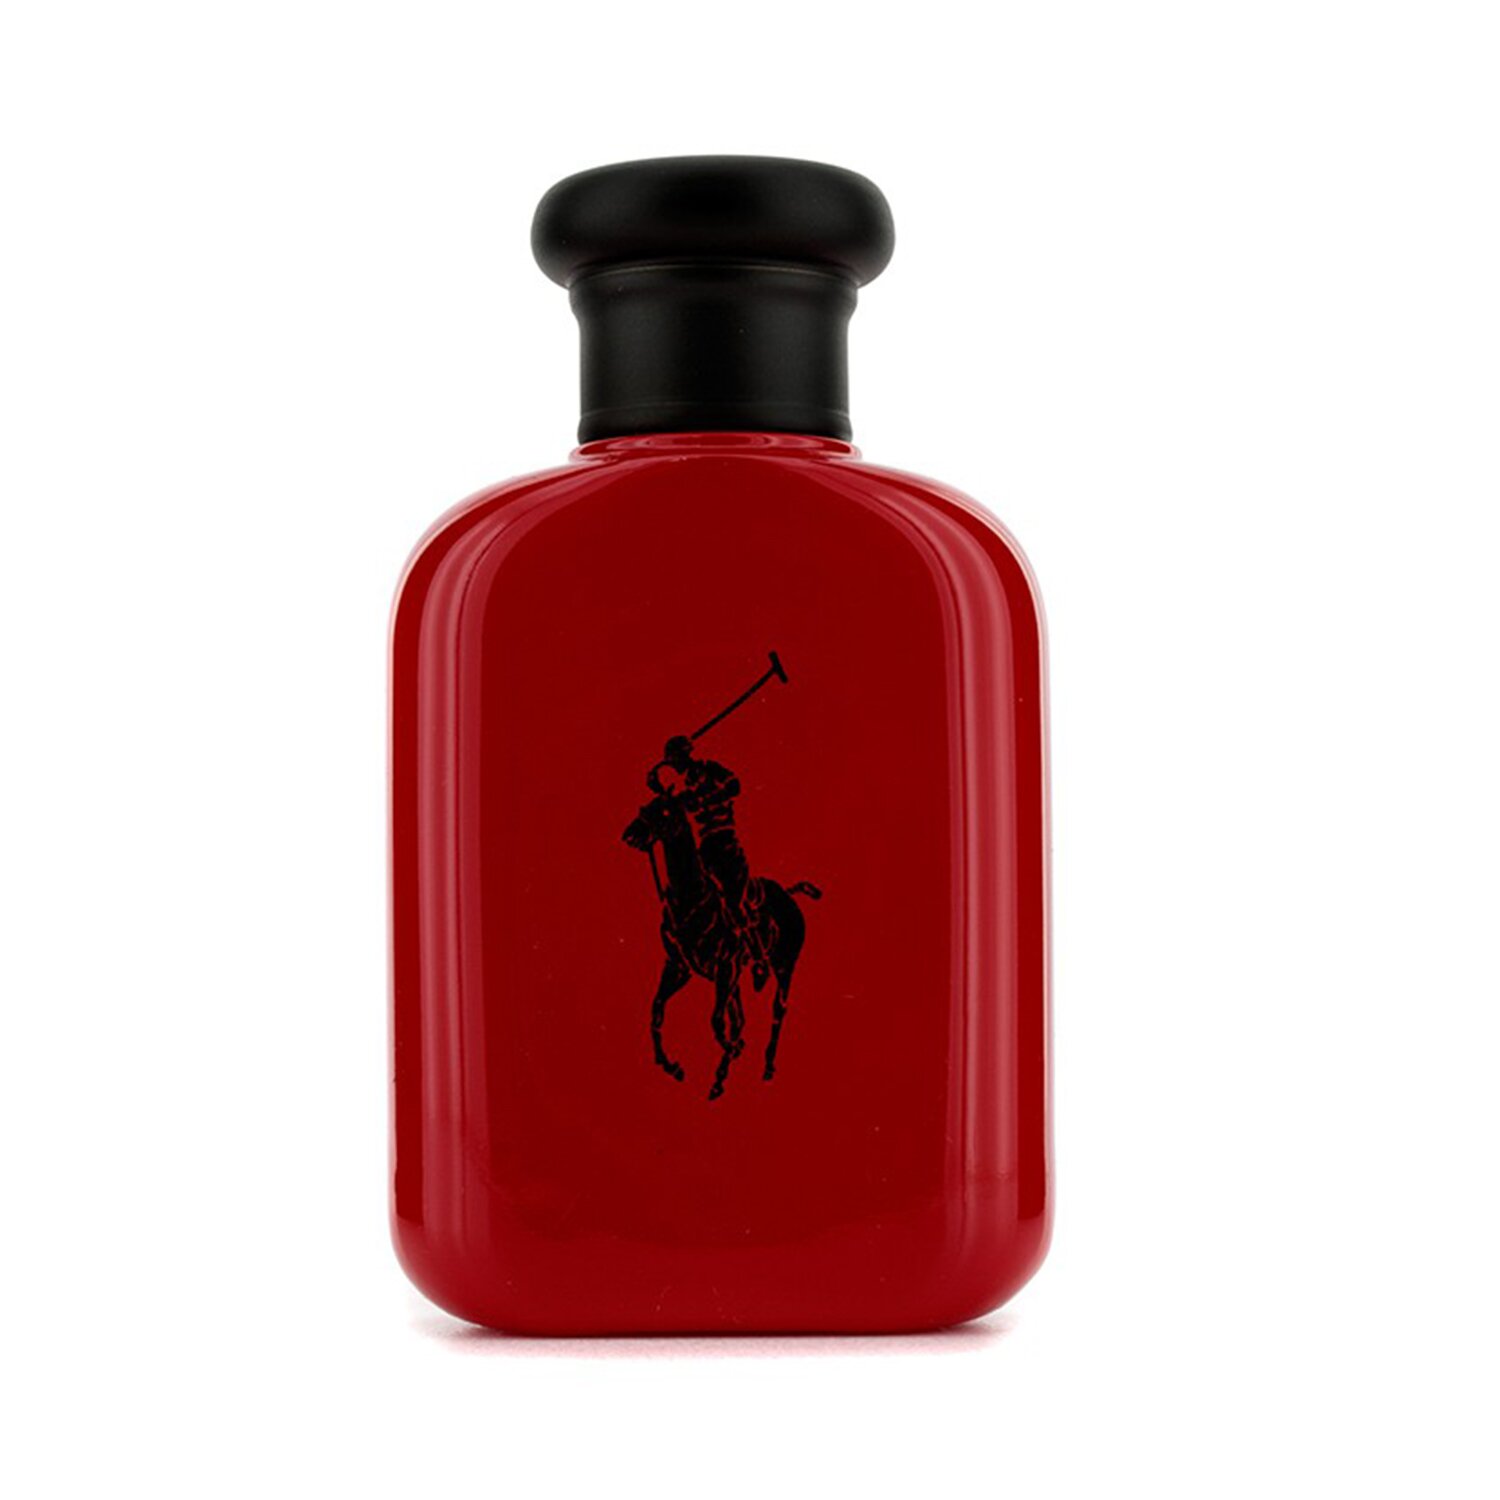 雷夫·羅倫馬球 Ralph Lauren - Polo Red 紅色馬球男性淡香水